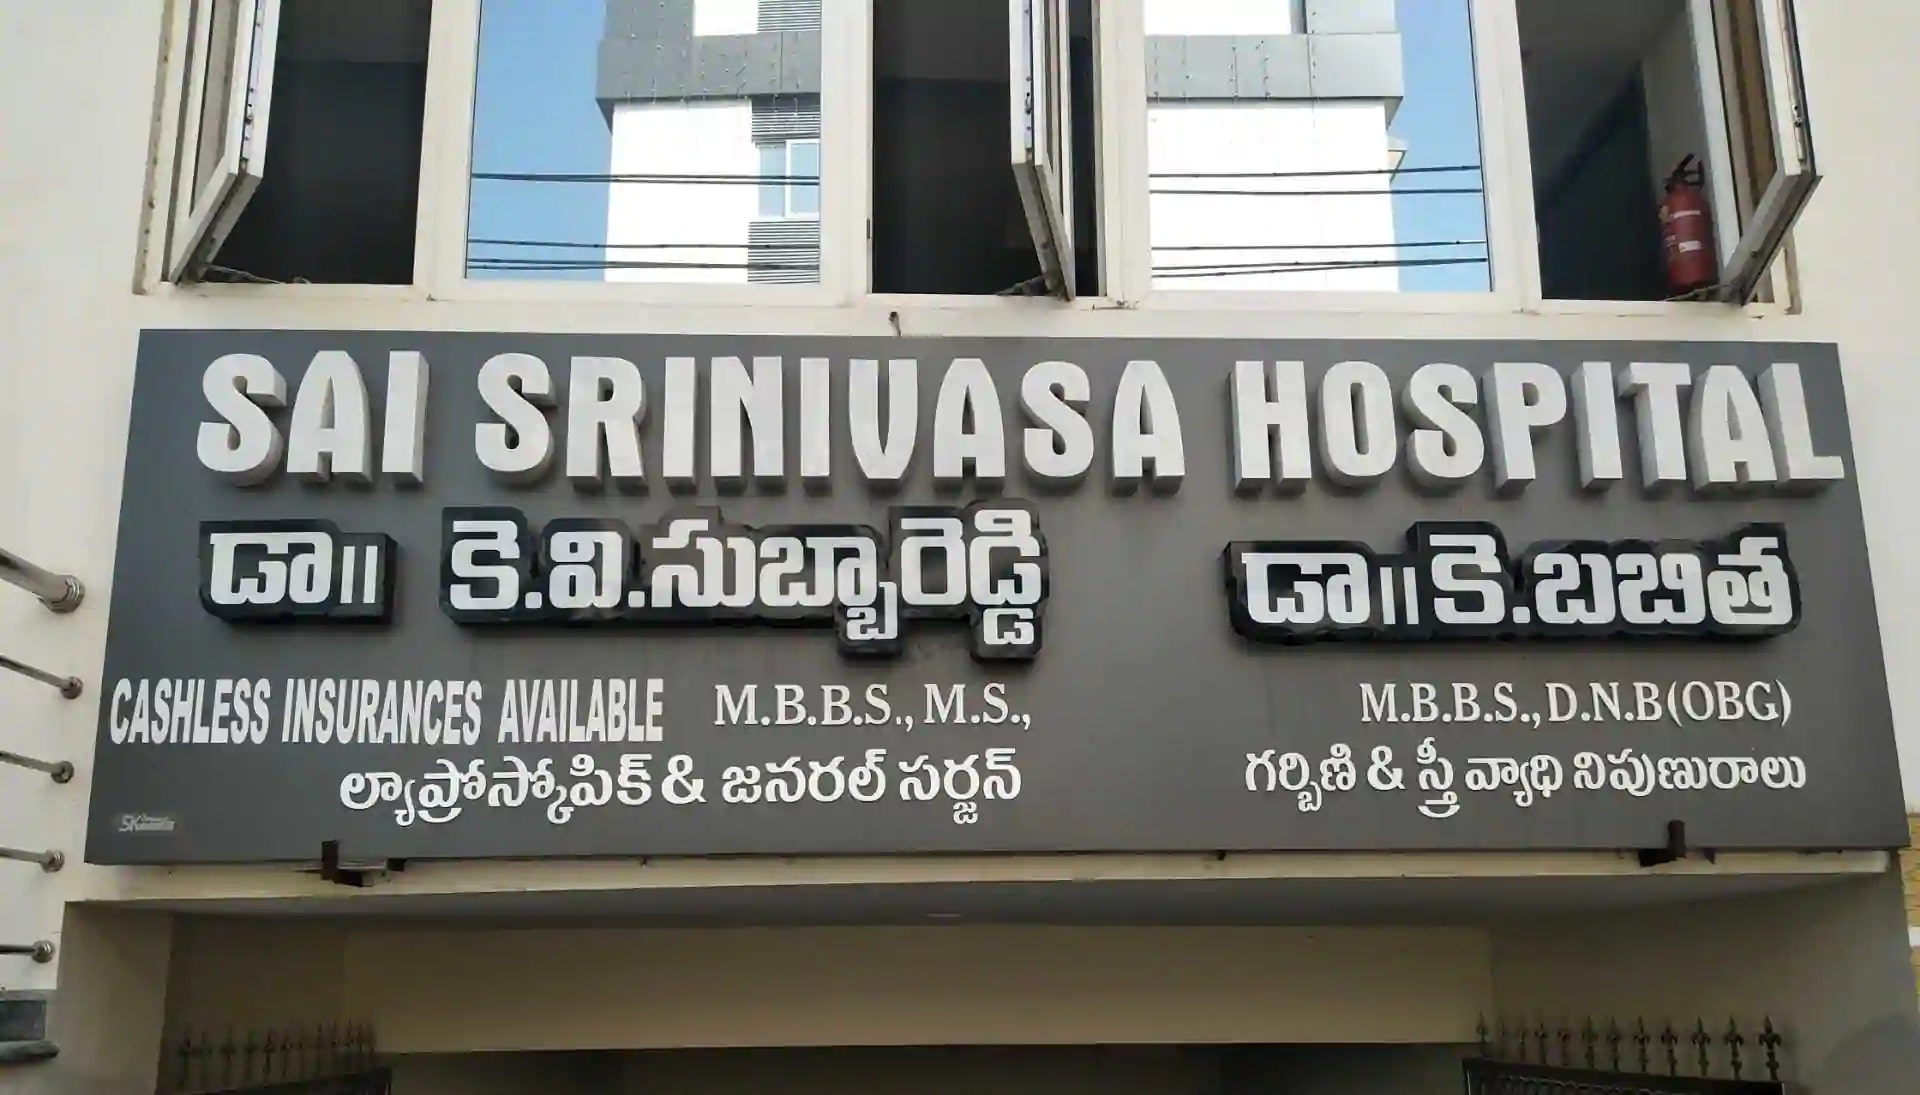 Sai Srinivasa Hospital